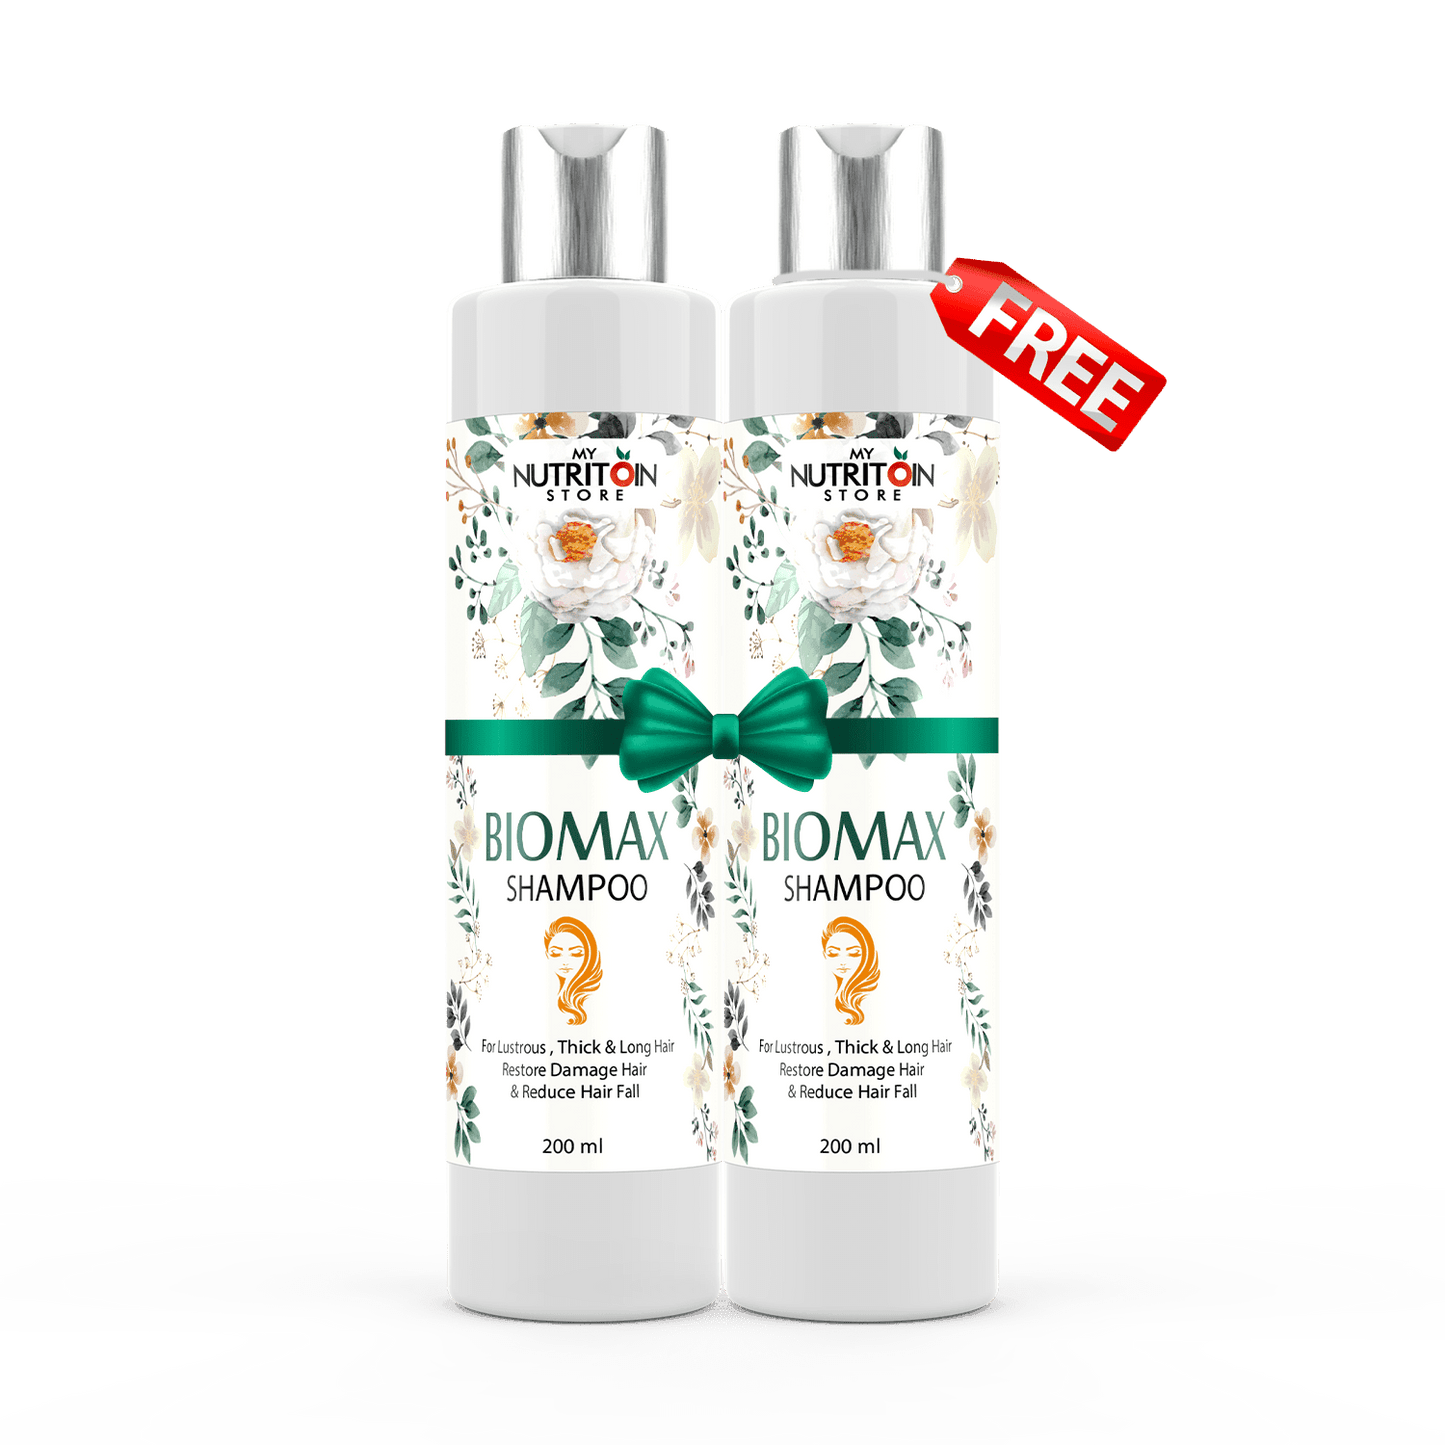 Buy-1 BioMax Shampoo & Get-1 Free - Healthifyme.pk